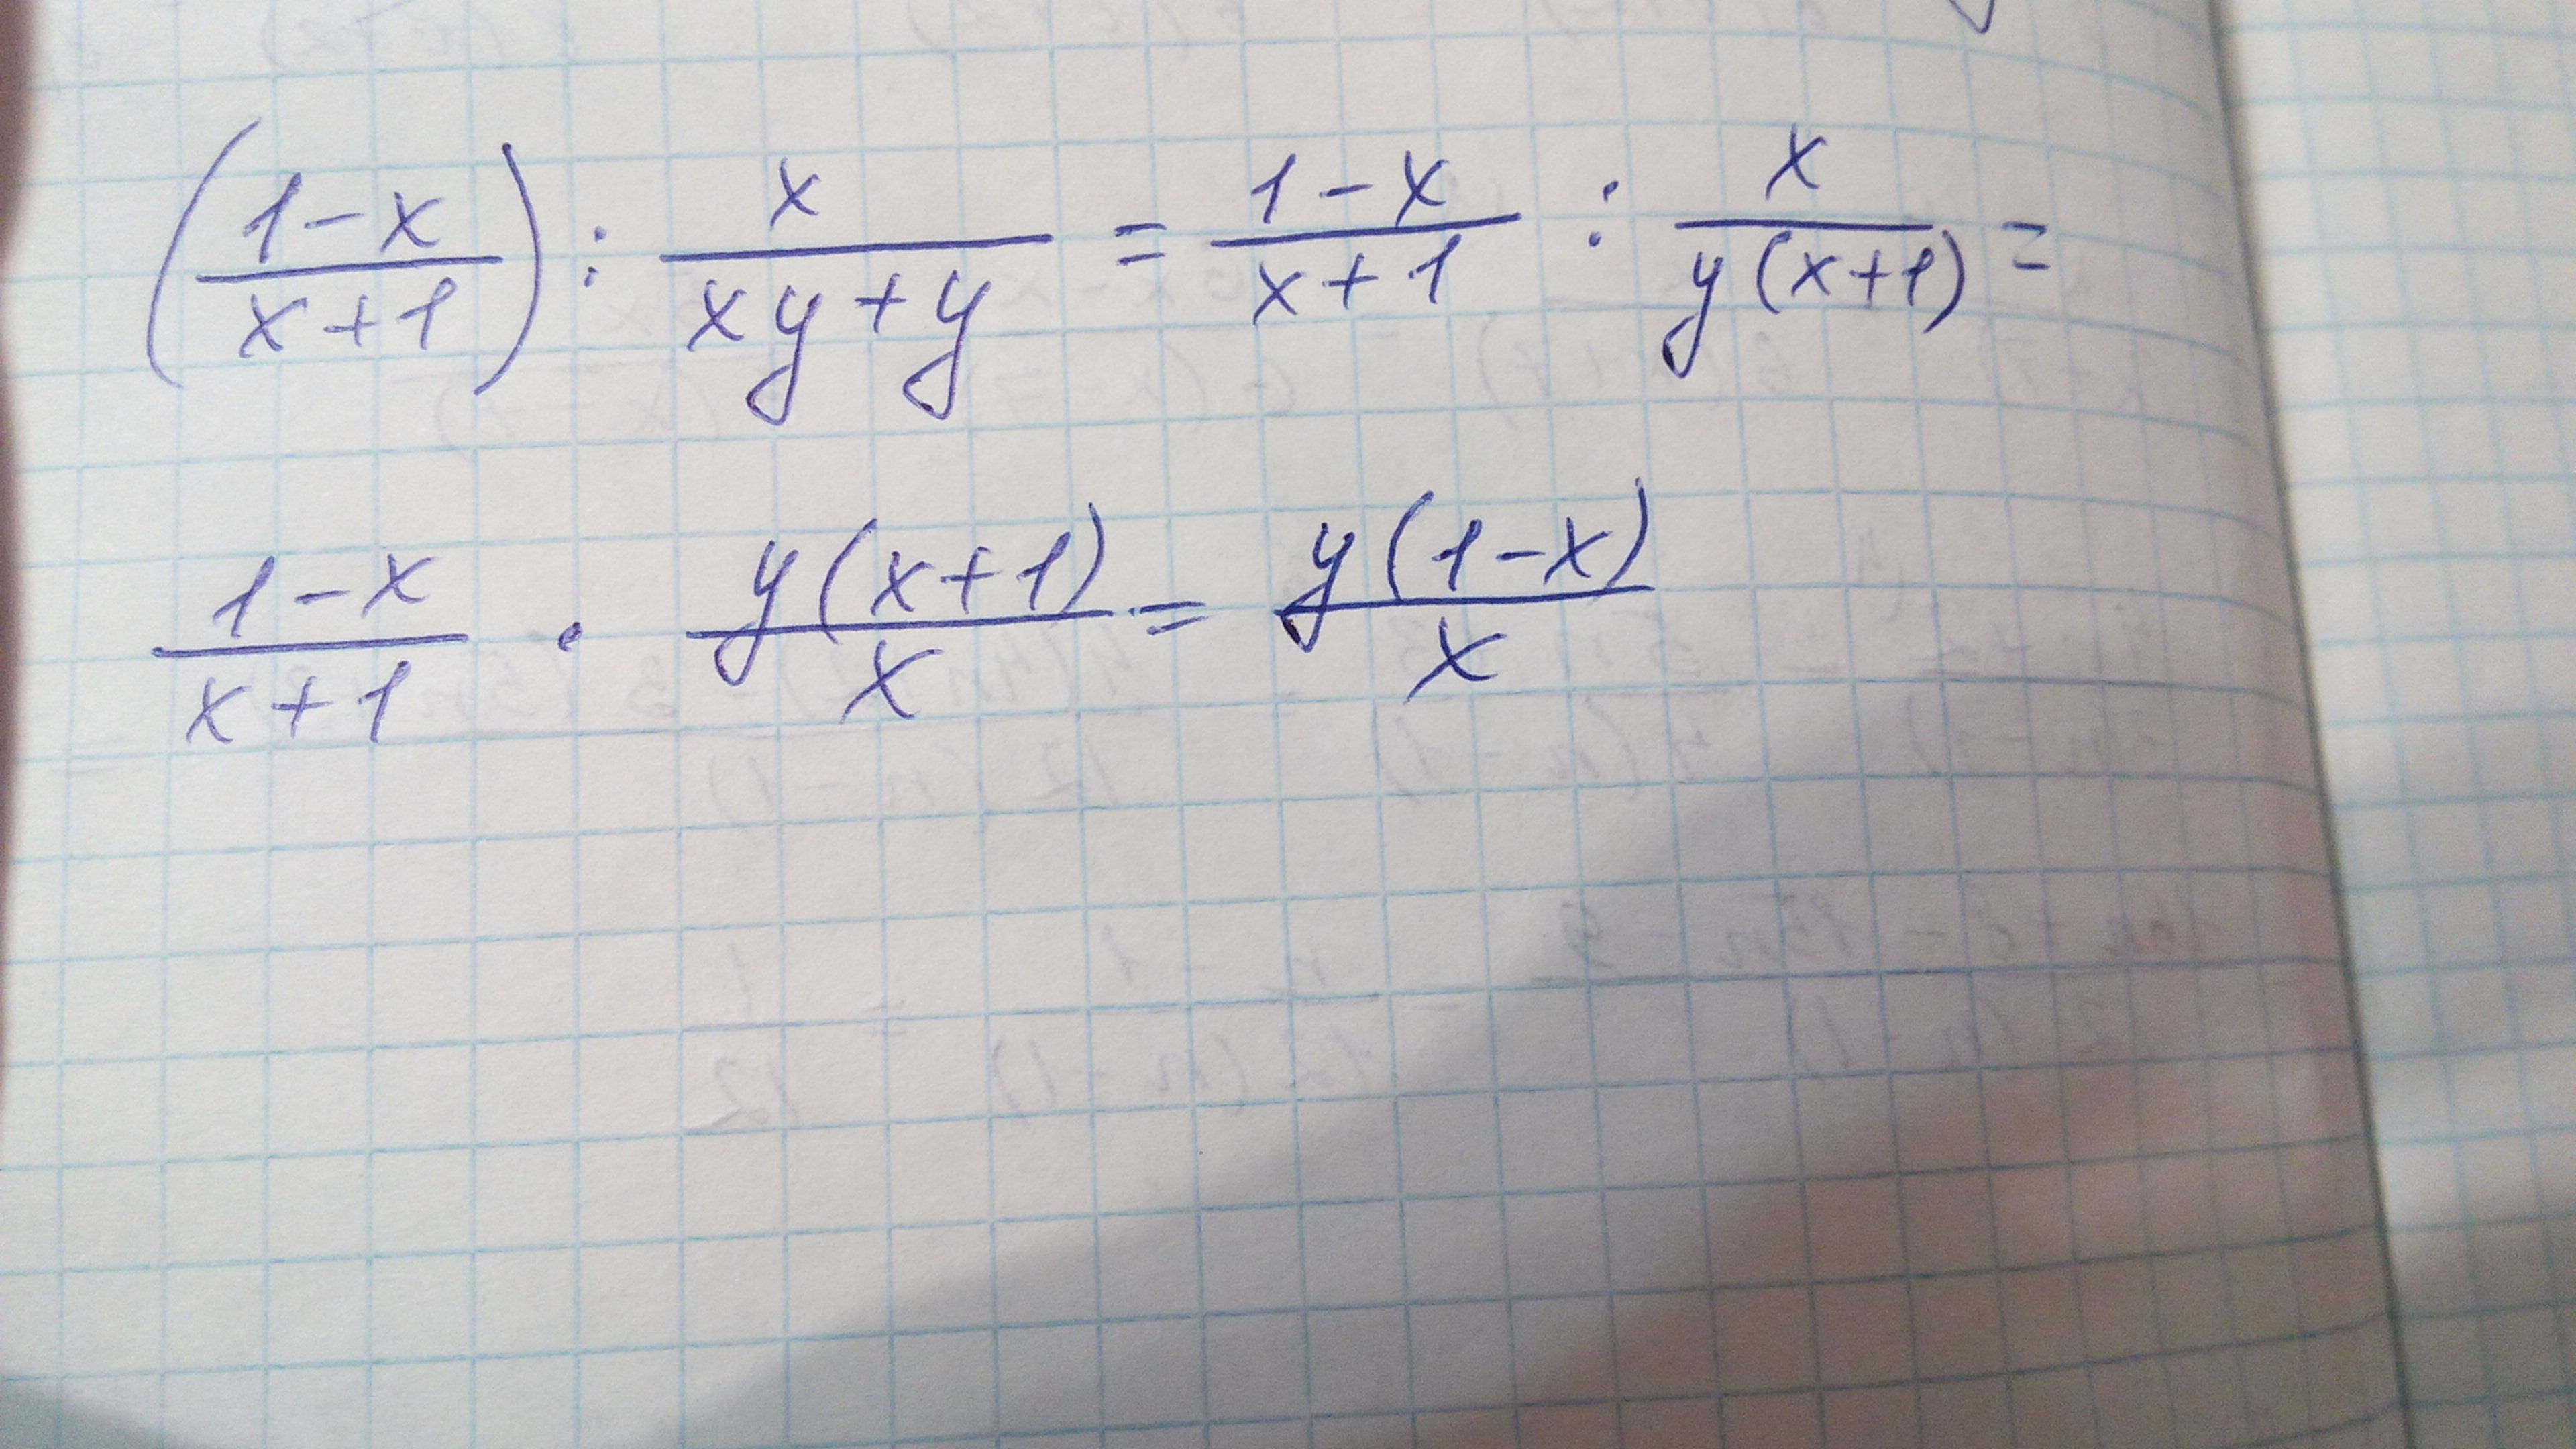 1 9 x 1 19 x. (X-1)(X+1). 1/X^2. 1x1. (X+1)(X+1)(X++1) степень.